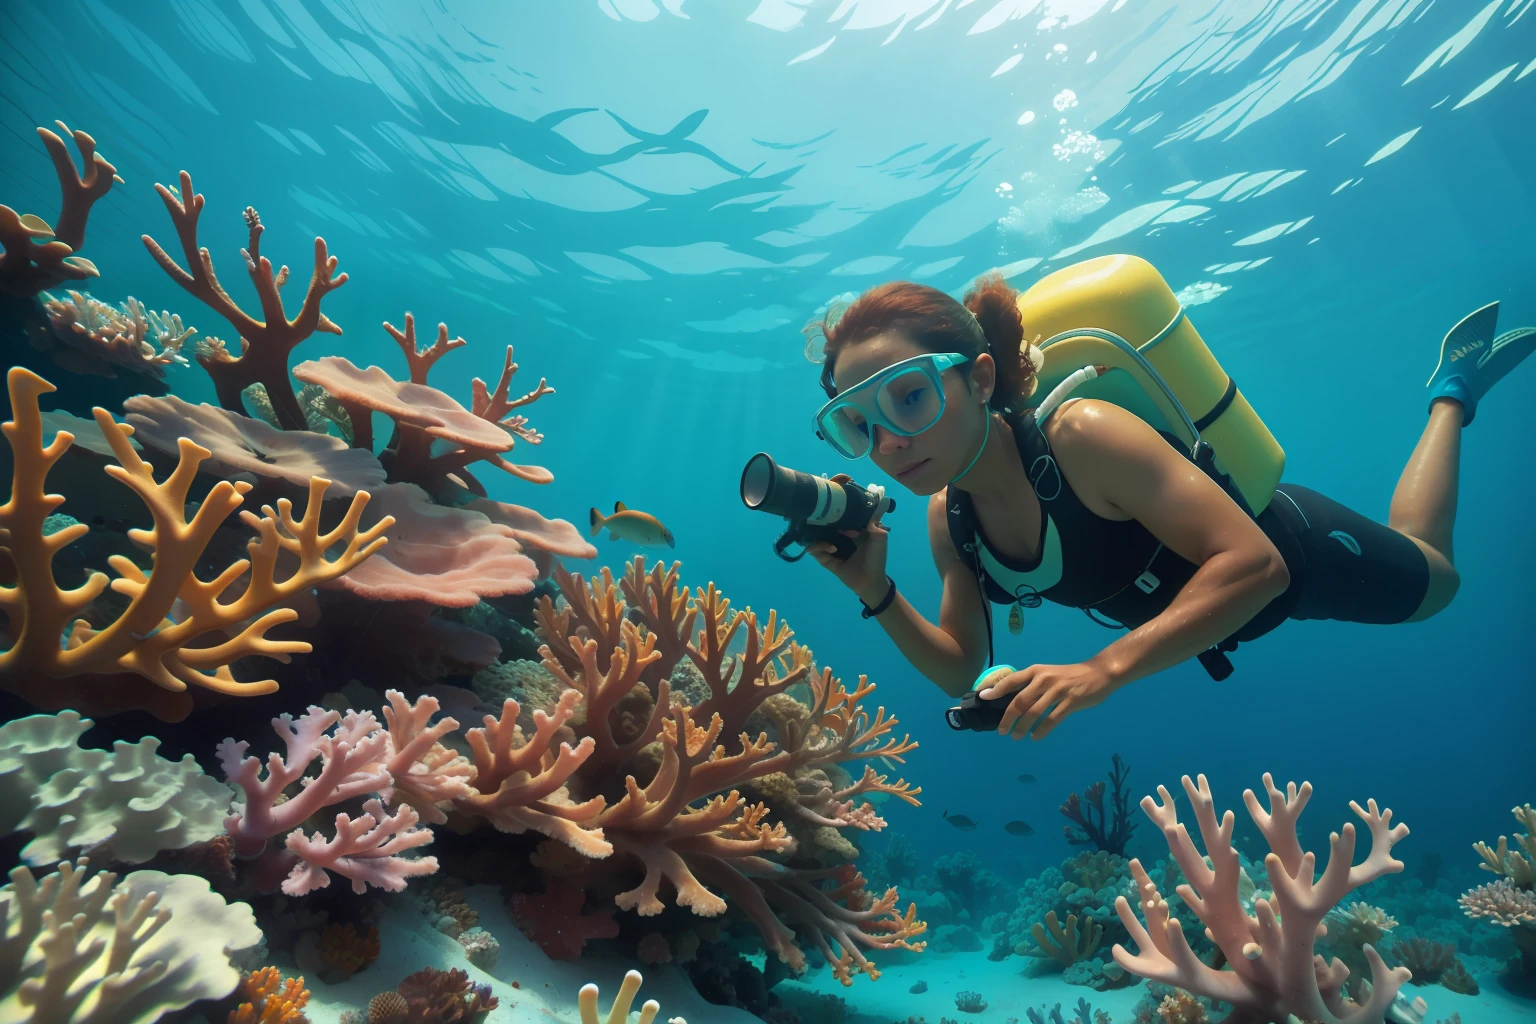 تاريخ: 2013 البلد: وصف جزر البهاما: يدرس عالم الأحياء البحرية البالغ من جزر البهاما بعناية الشعاب المرجانية النابضة بالحياة تحت الماء, إضافة عنصر الإدارة البيئية إلى الغلاف الجوي.